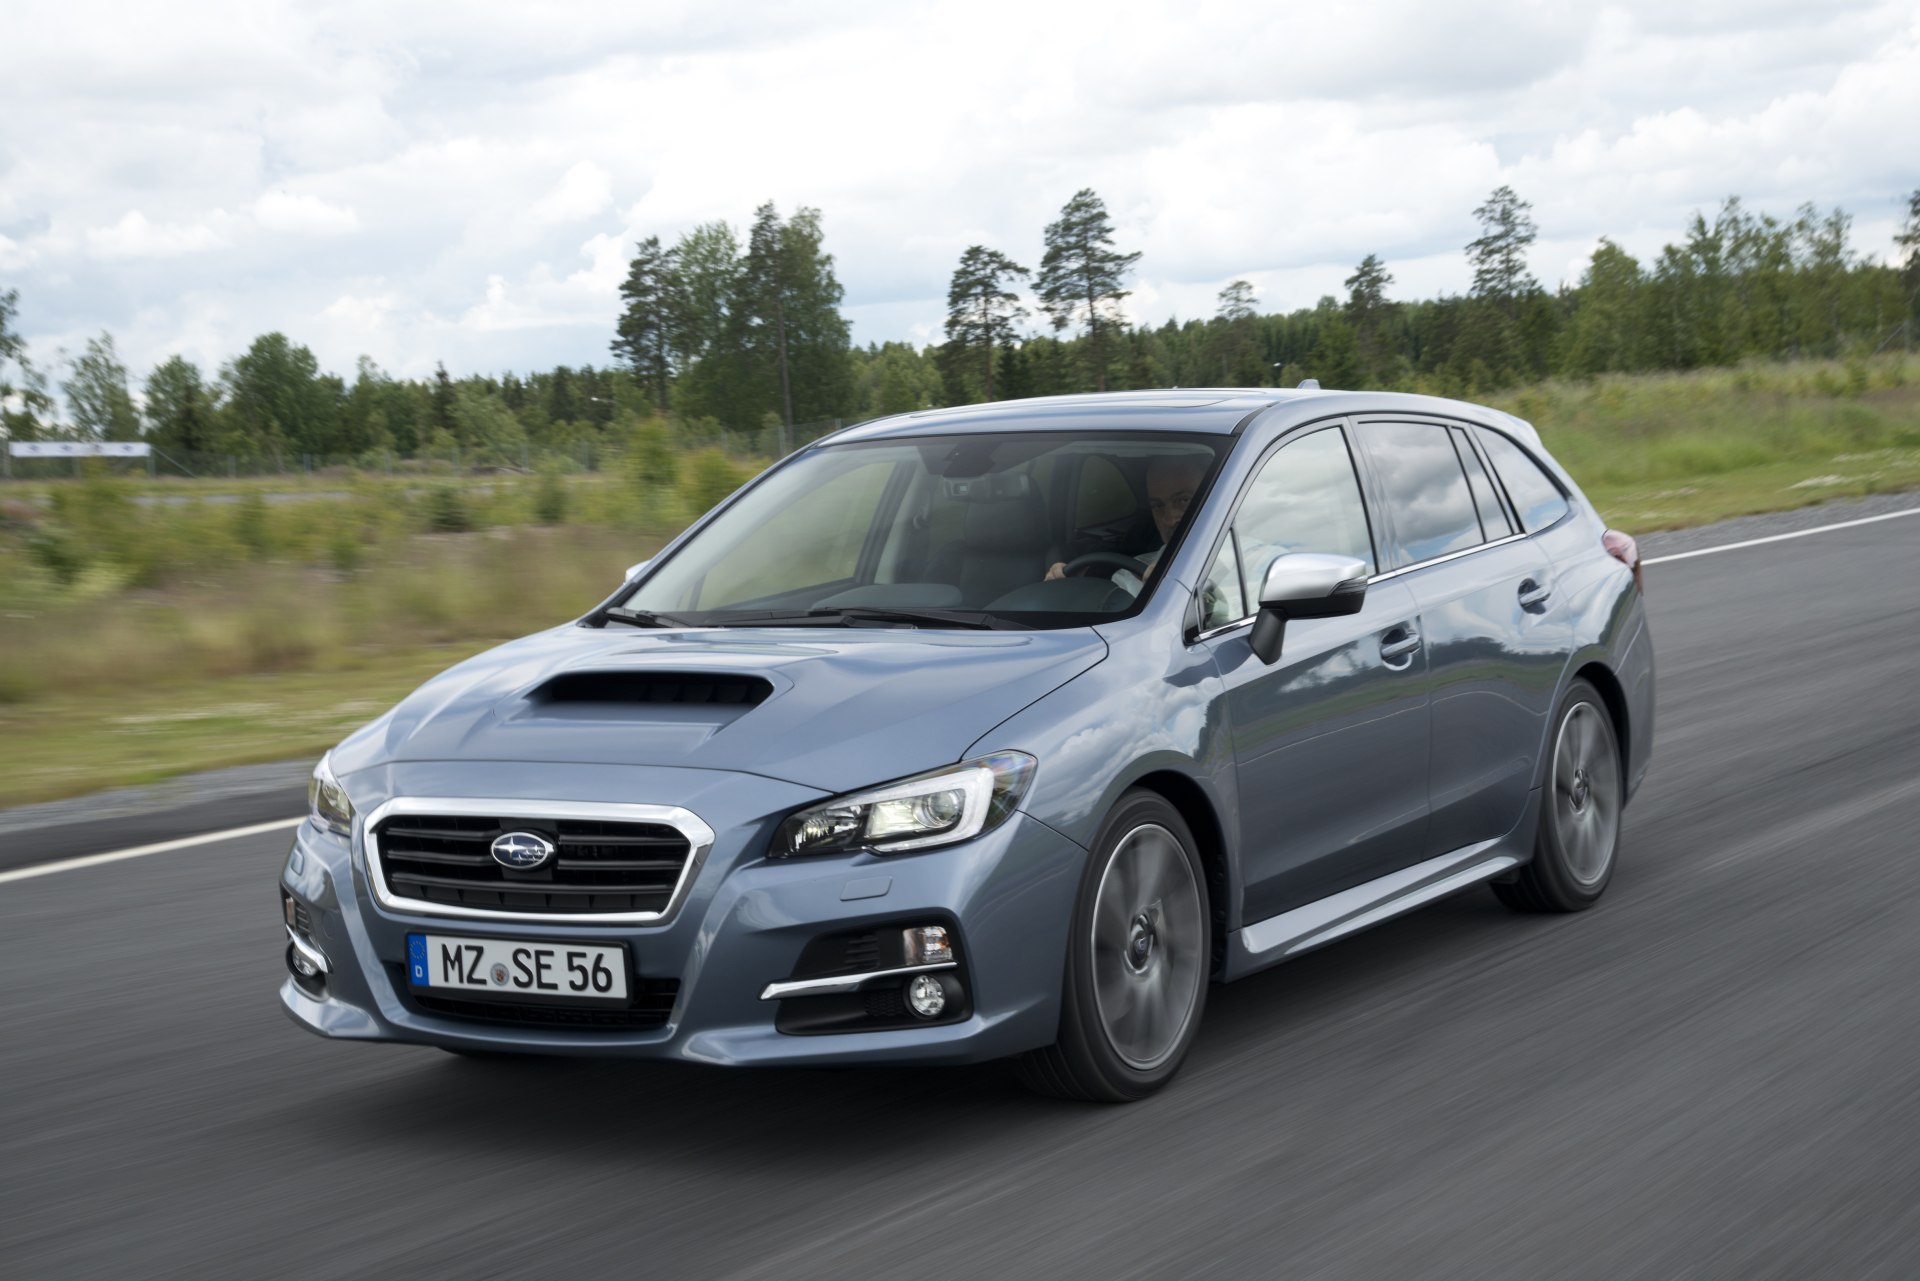 El Subaru Levorg estará en venta en España a finales de 2015